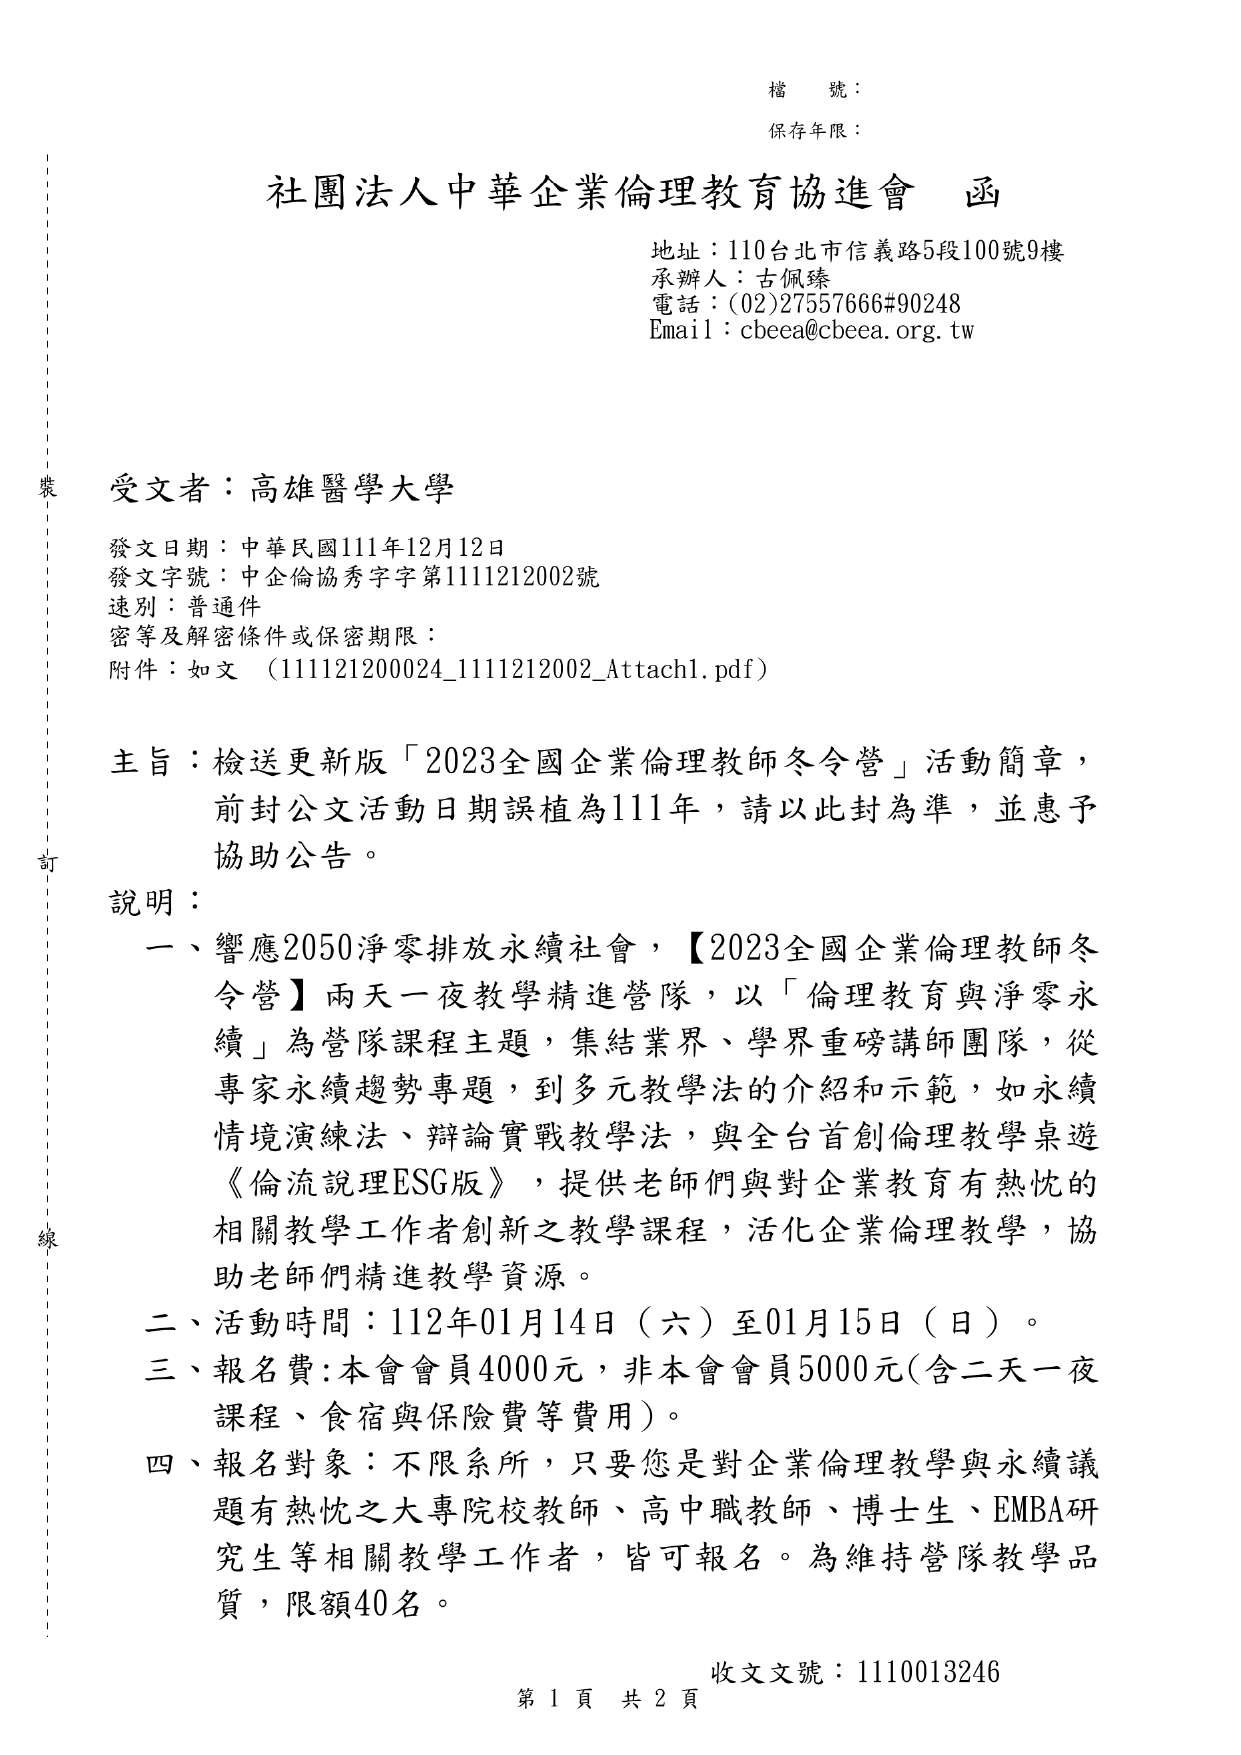 1111220社團法人中華企業倫理教育協進會課程宣傳公文 page 0001